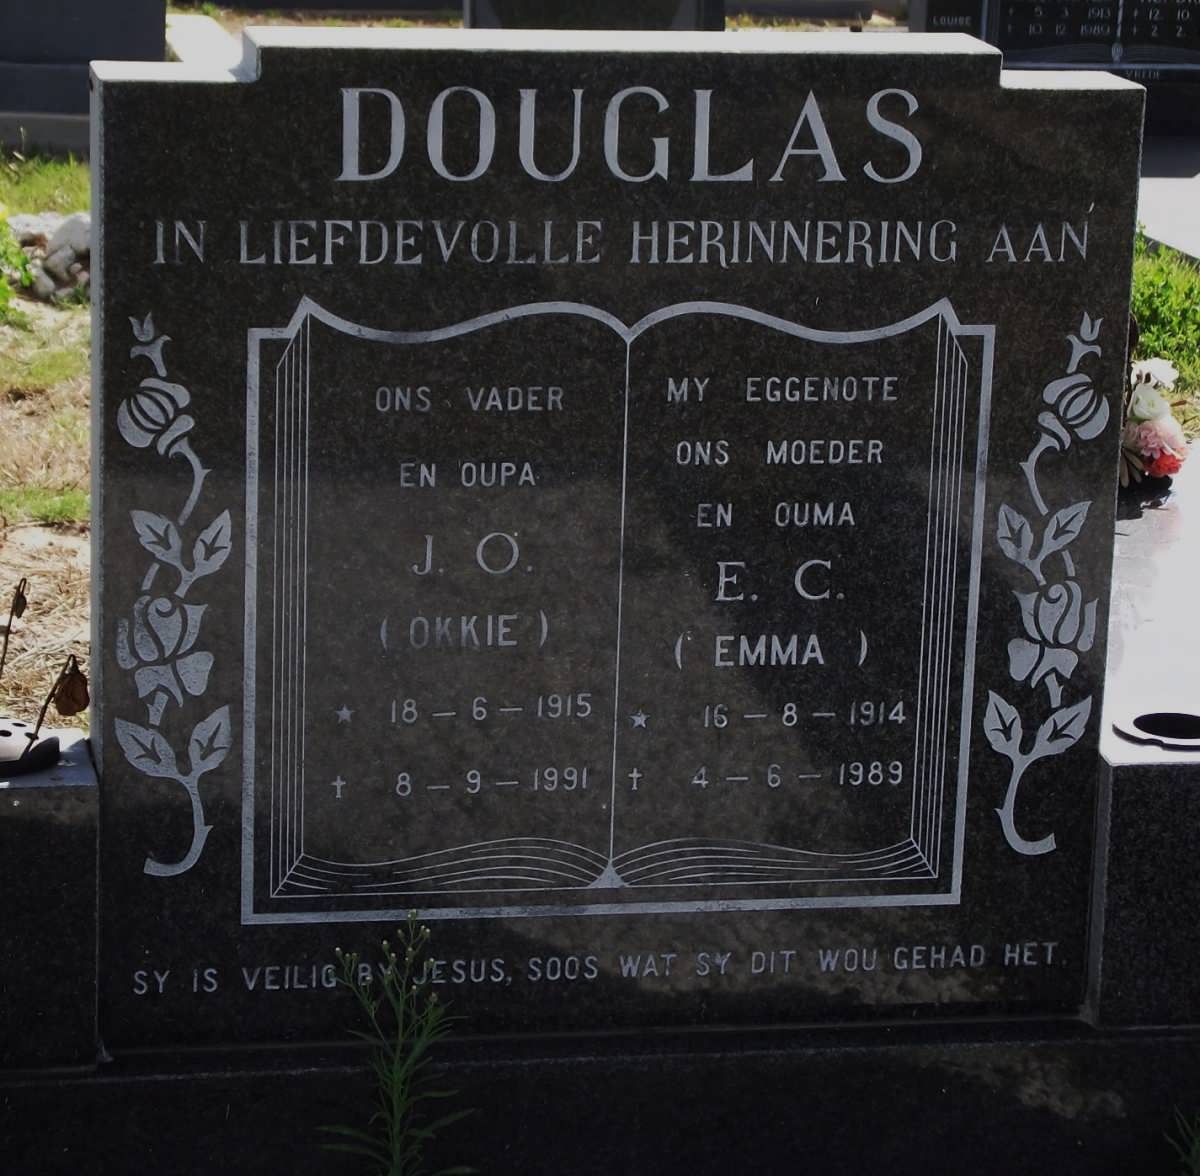 DOUGLAS J.O. 1915-1991 & E.C. 1914-1989